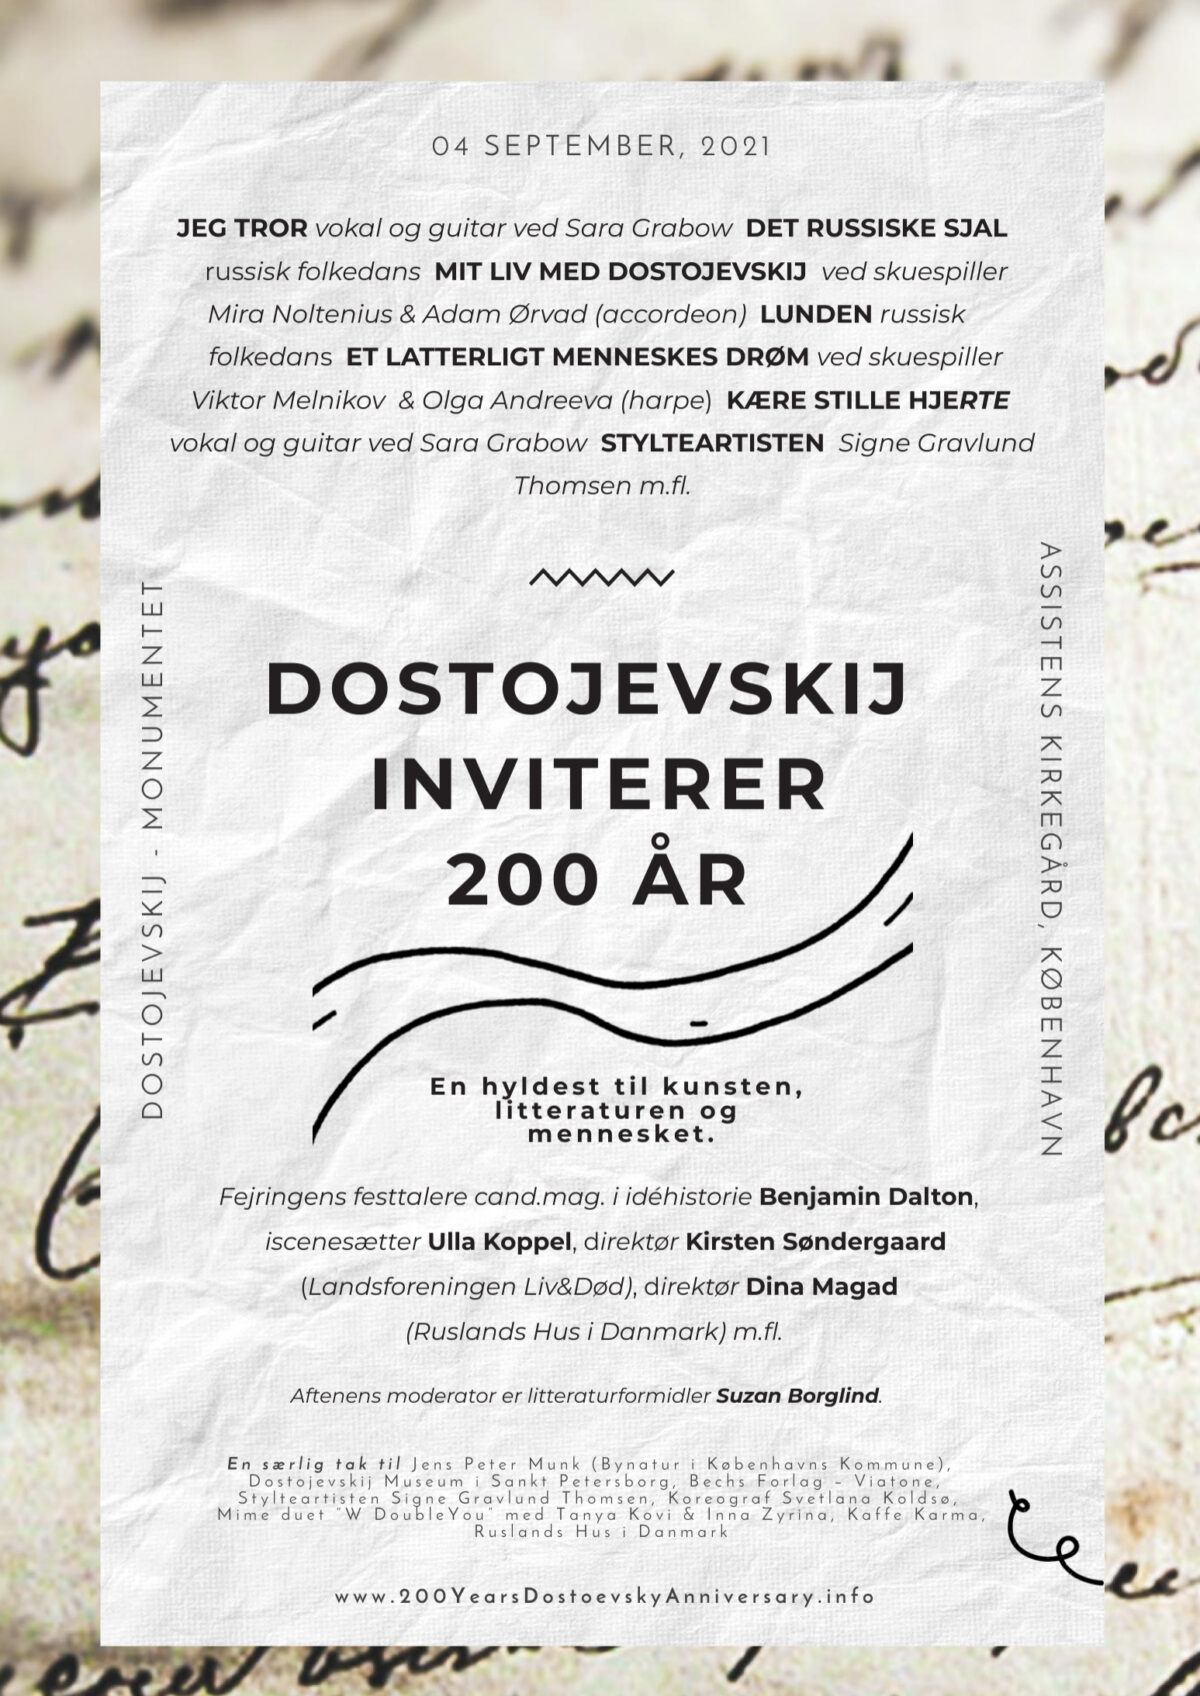 Dostojevskij Inviterer. I anledning af 200-året i 2021.